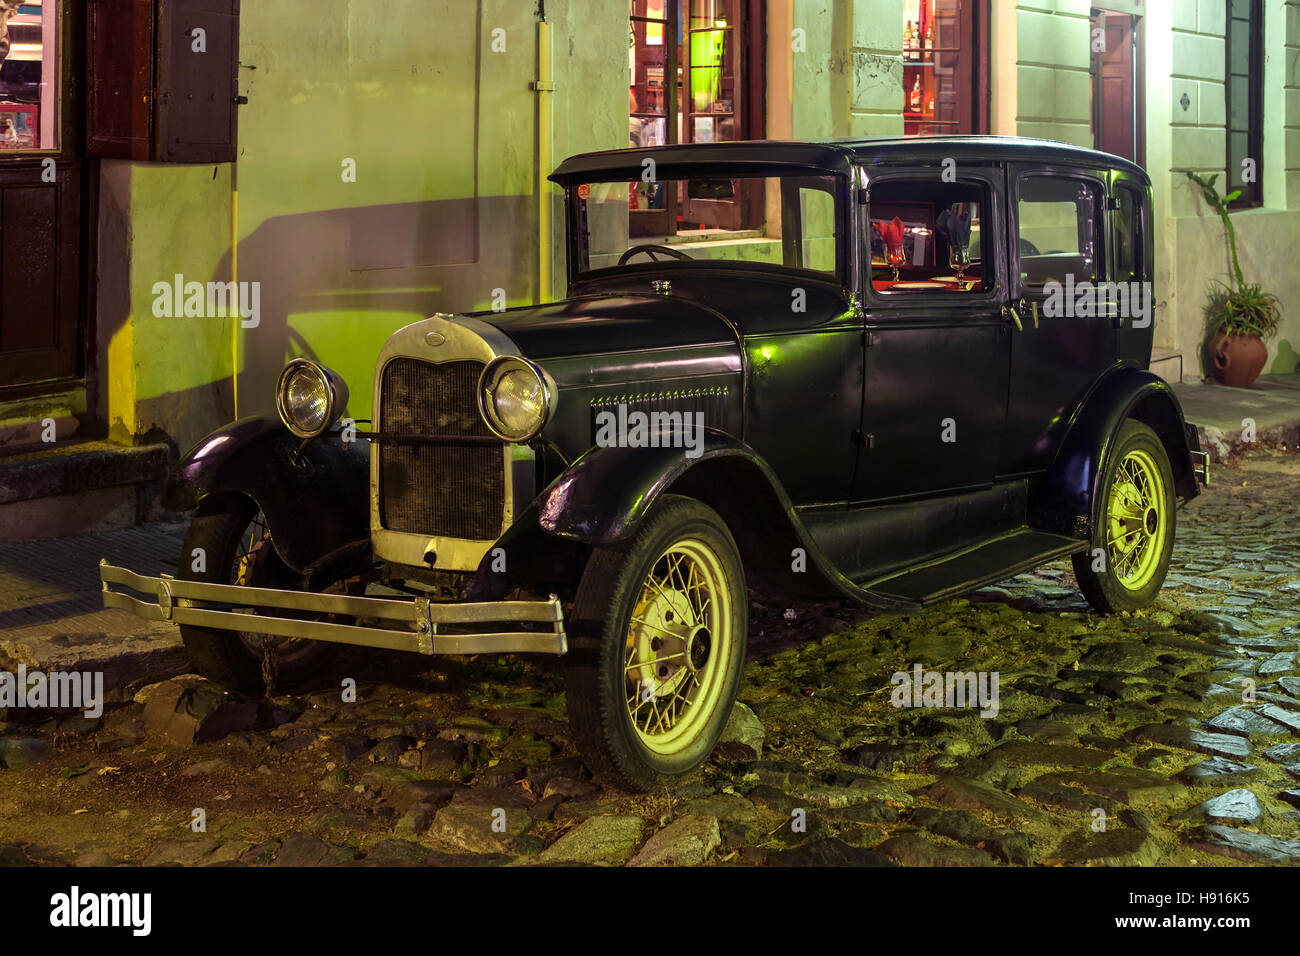 Vintage car, Colonia del Sacramento, Uruguay Stock Photo